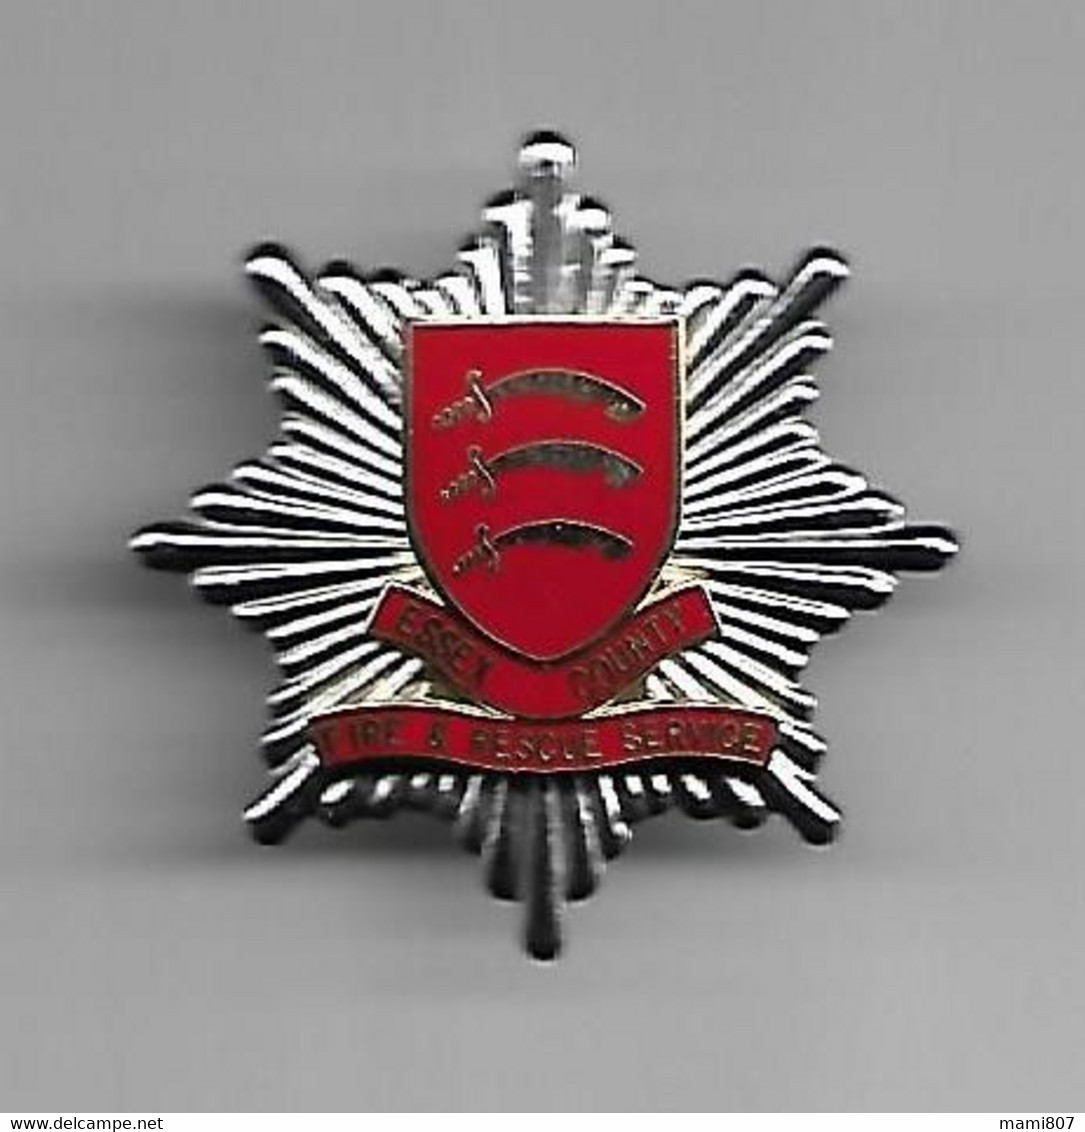 Pompiers Insigne Métal "ESSEX COUNTY" - "FIRE & RESCUE SERVICE" (G.B.) - Firemen